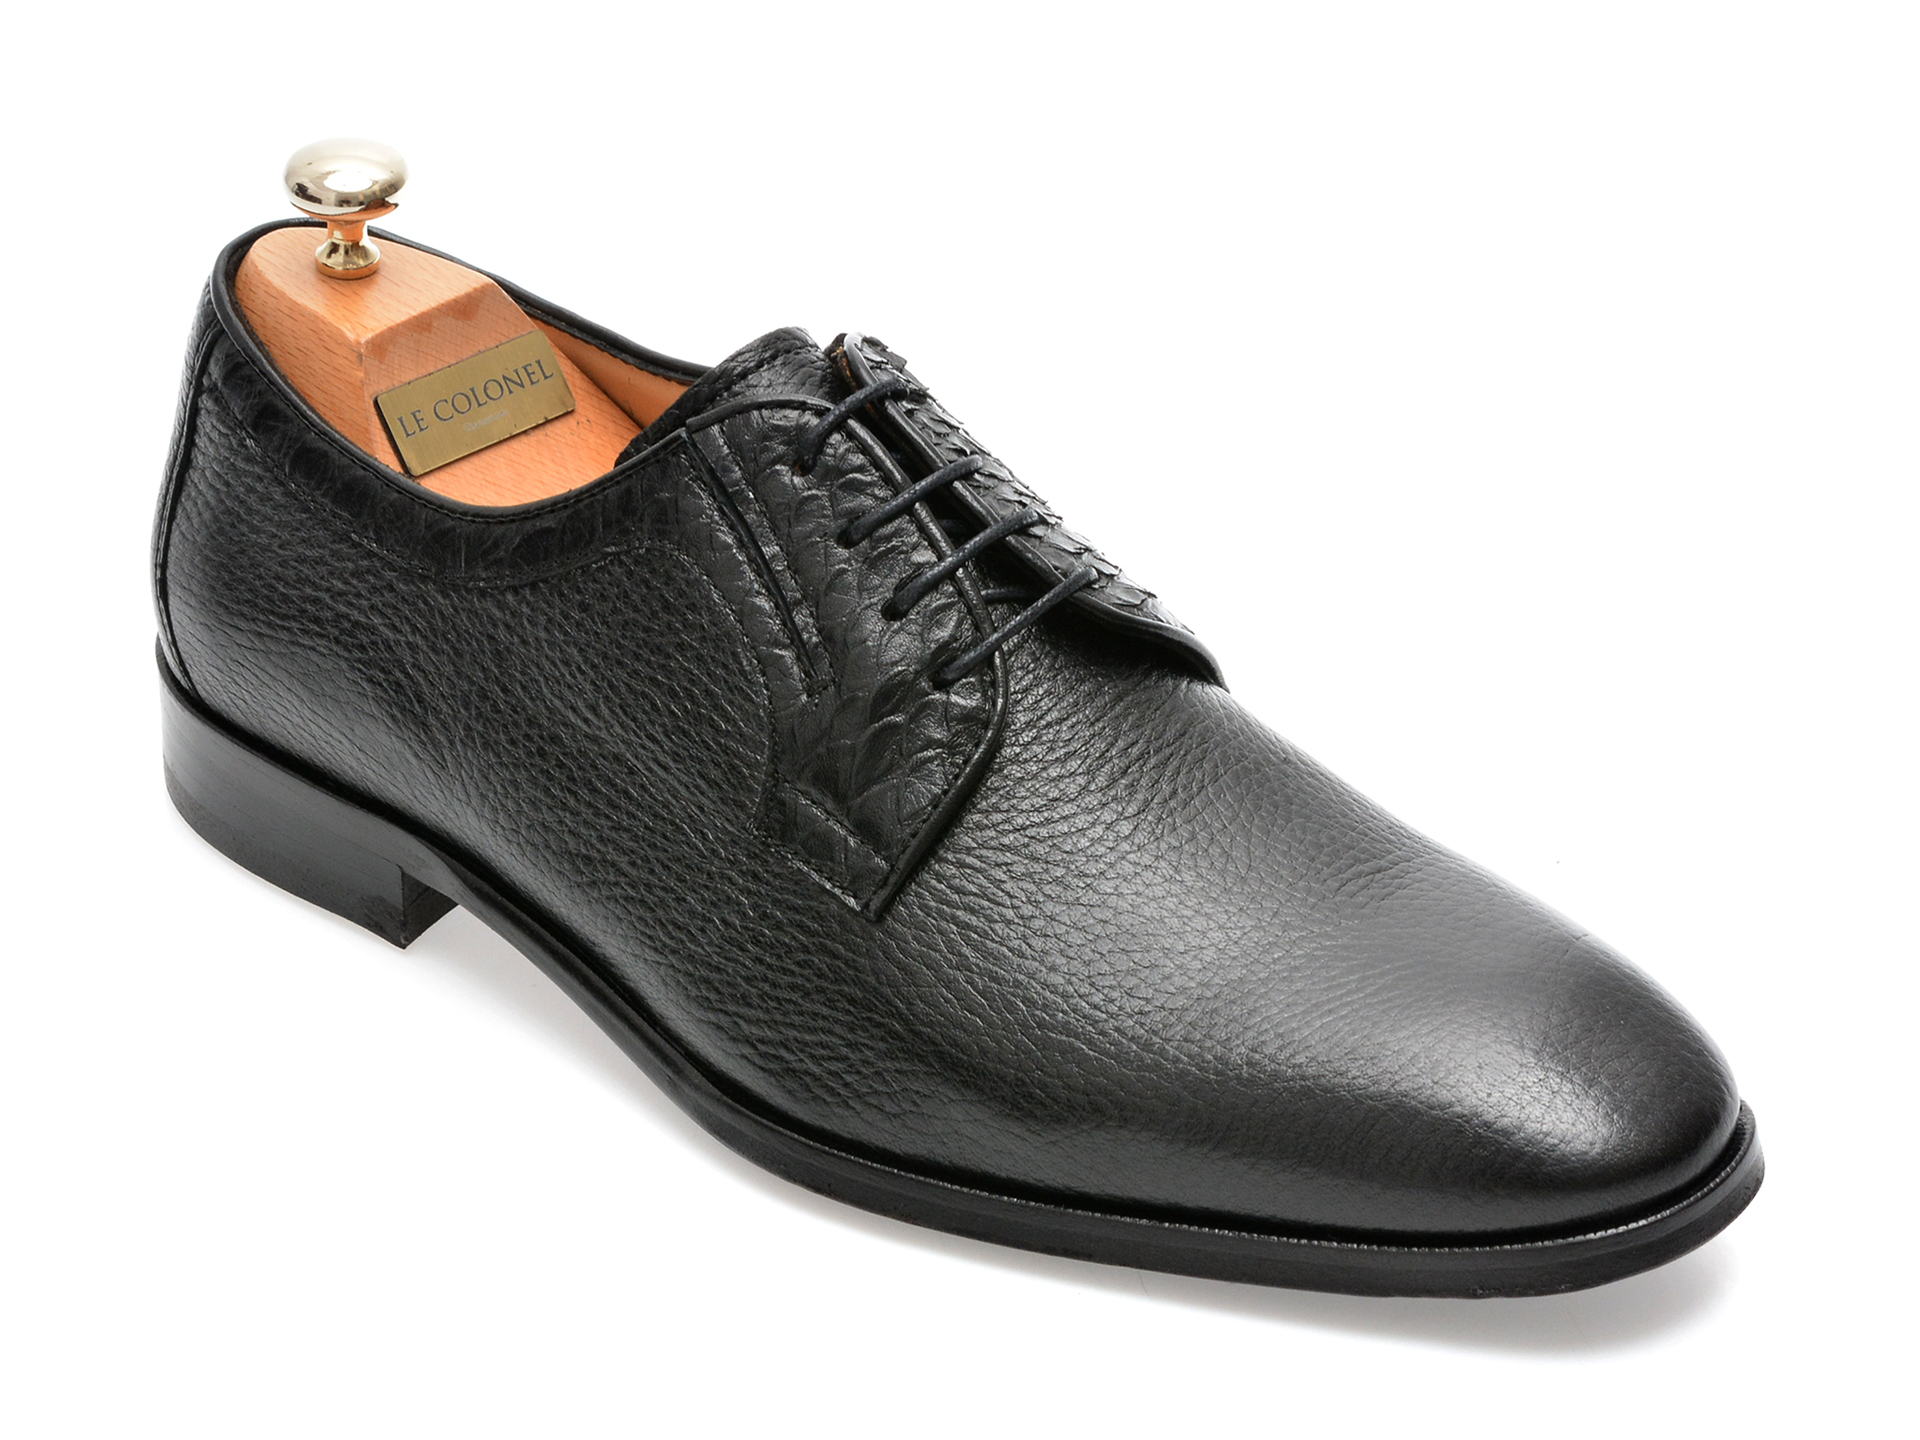 Pantofi LE COLONEL negri, 48711, din piele naturala Le Colonel Le Colonel